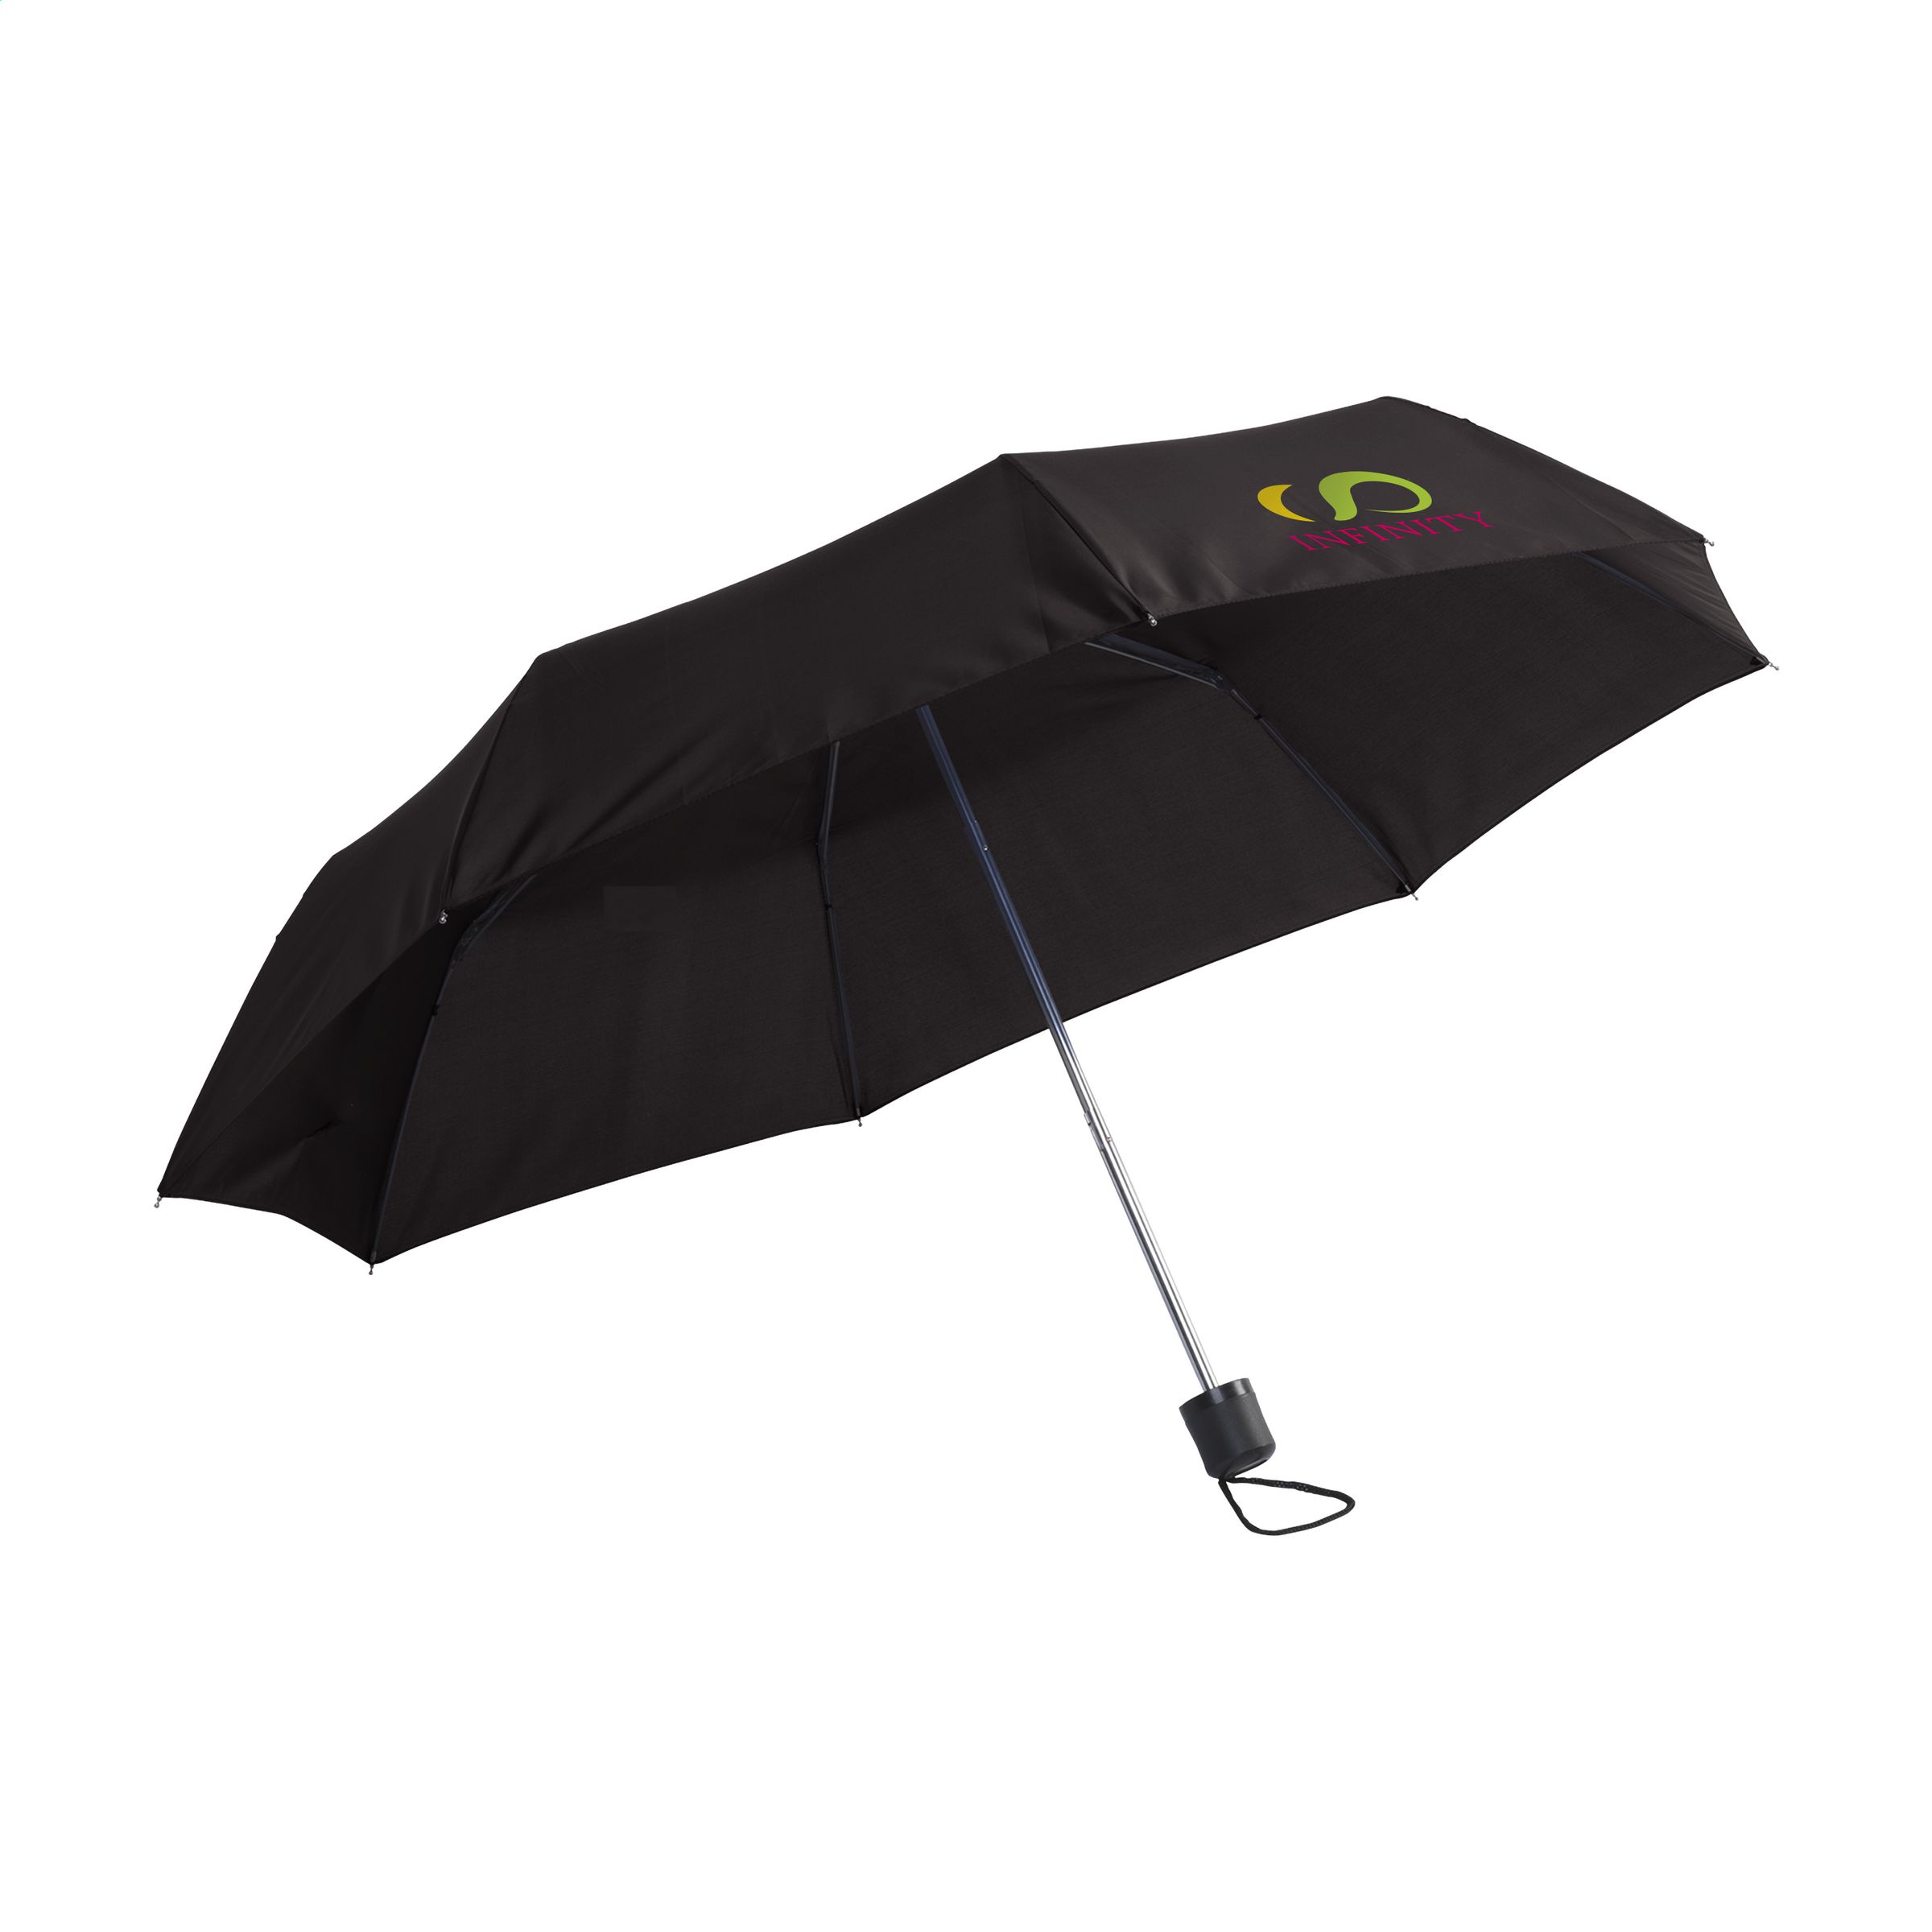 Parapluie personnalisé ultra compact 92cm - Garibaldi - Zaprinta France